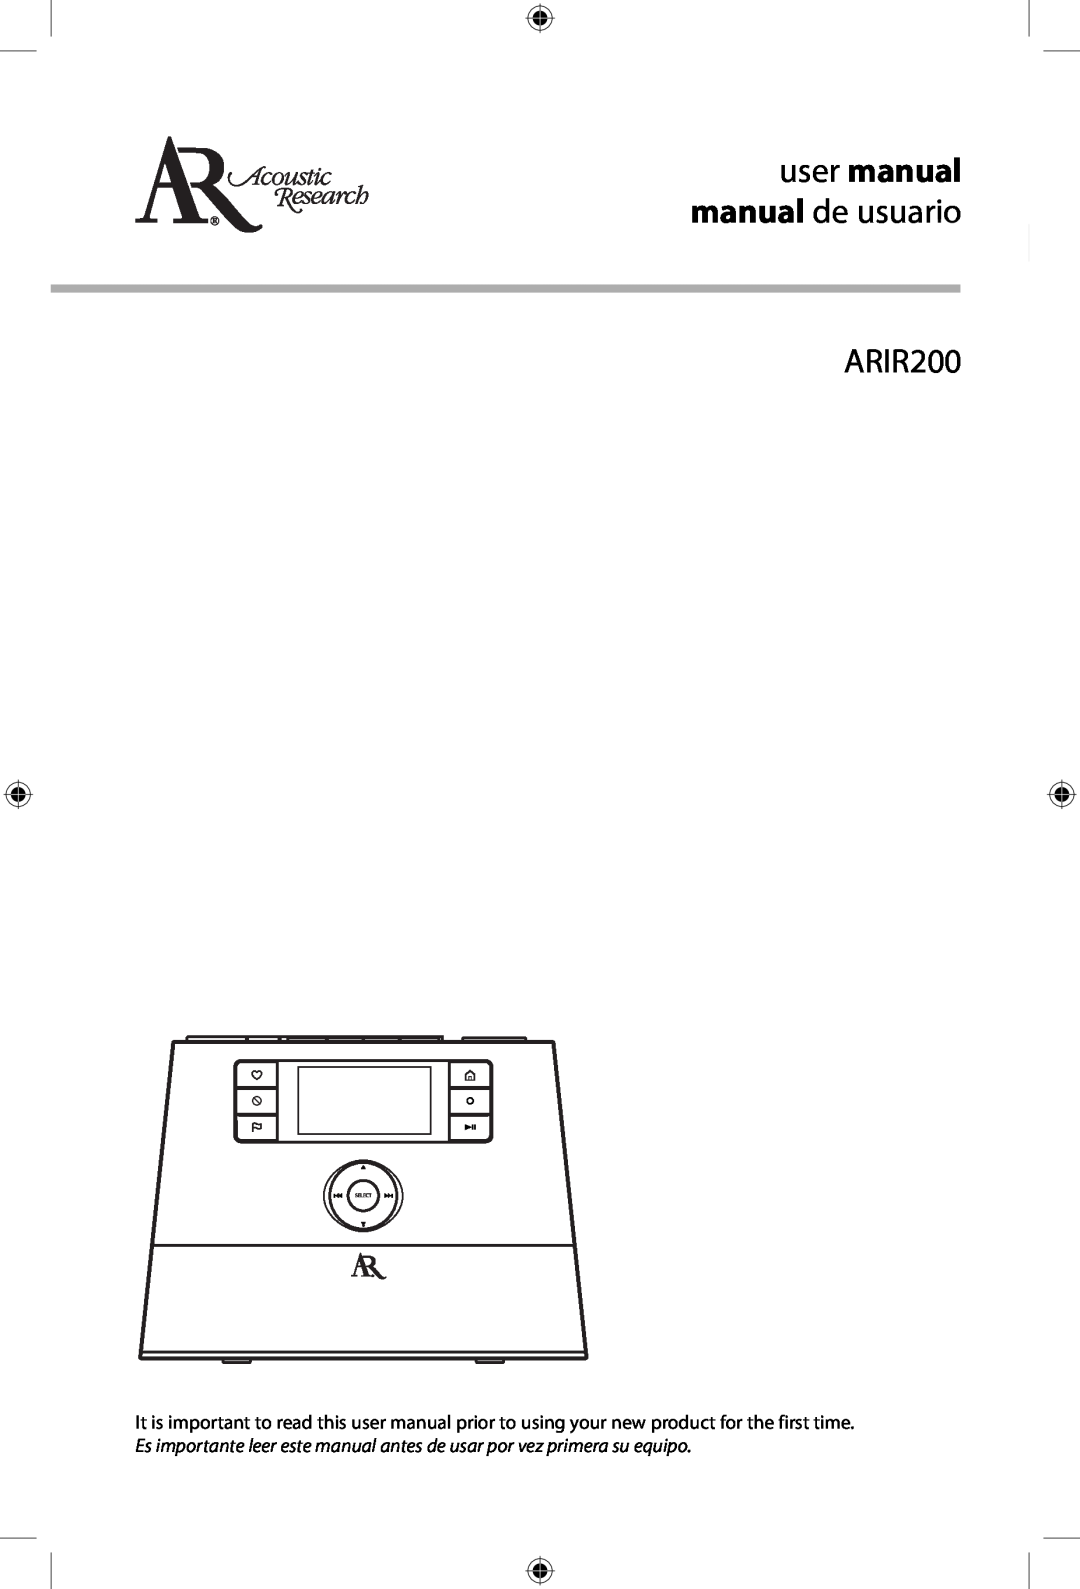 Acoustic Research ARIR200 user manual user manual manual de usuario 